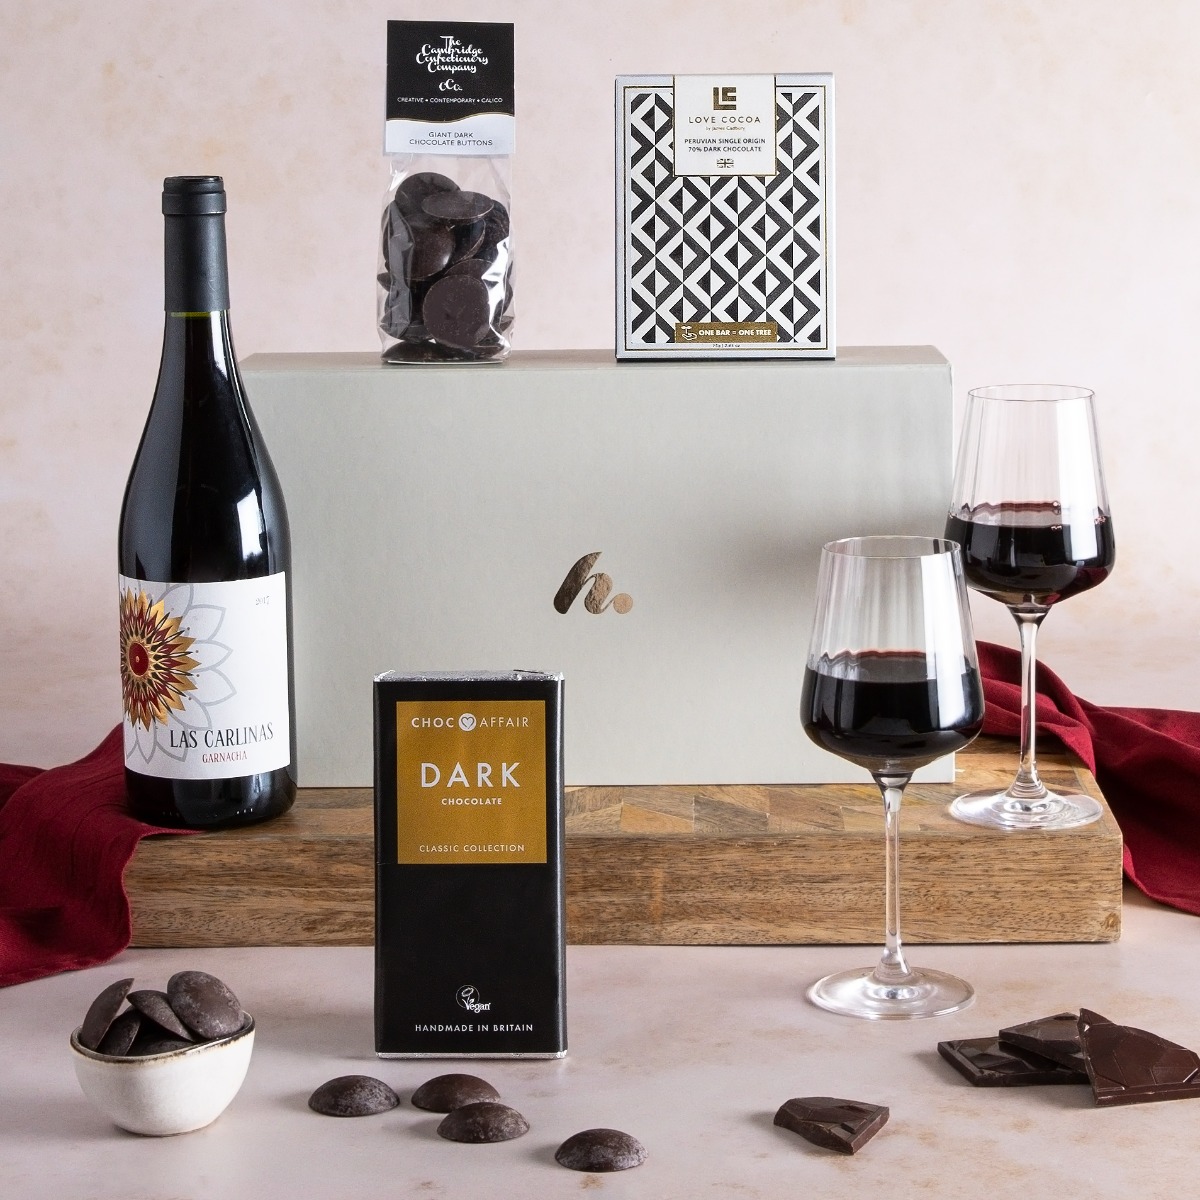 Red Wine & Dark Chocolate Gift Box Wine and chocolate gifts UK Hampers.com